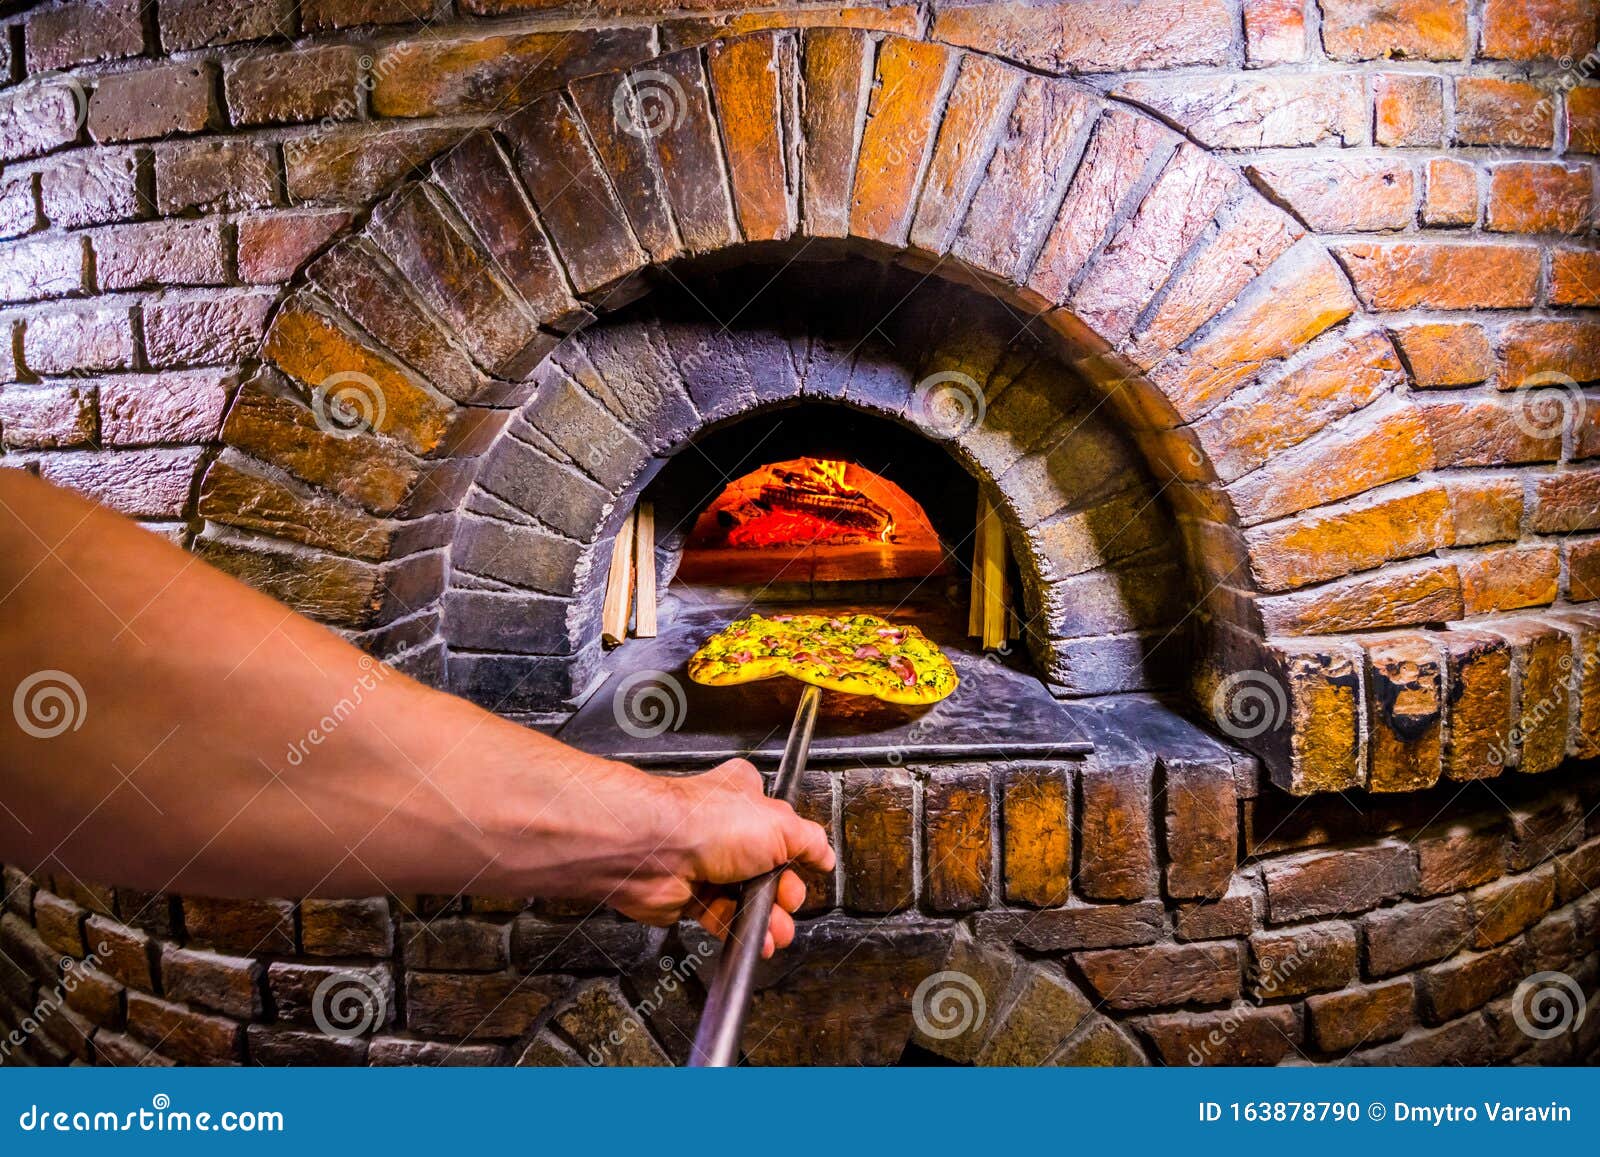 PITELLI Piedra de la pizza pizza como del horno de piedra. RÚSTICO con humo añadido NUEVO Estilo de Italia 